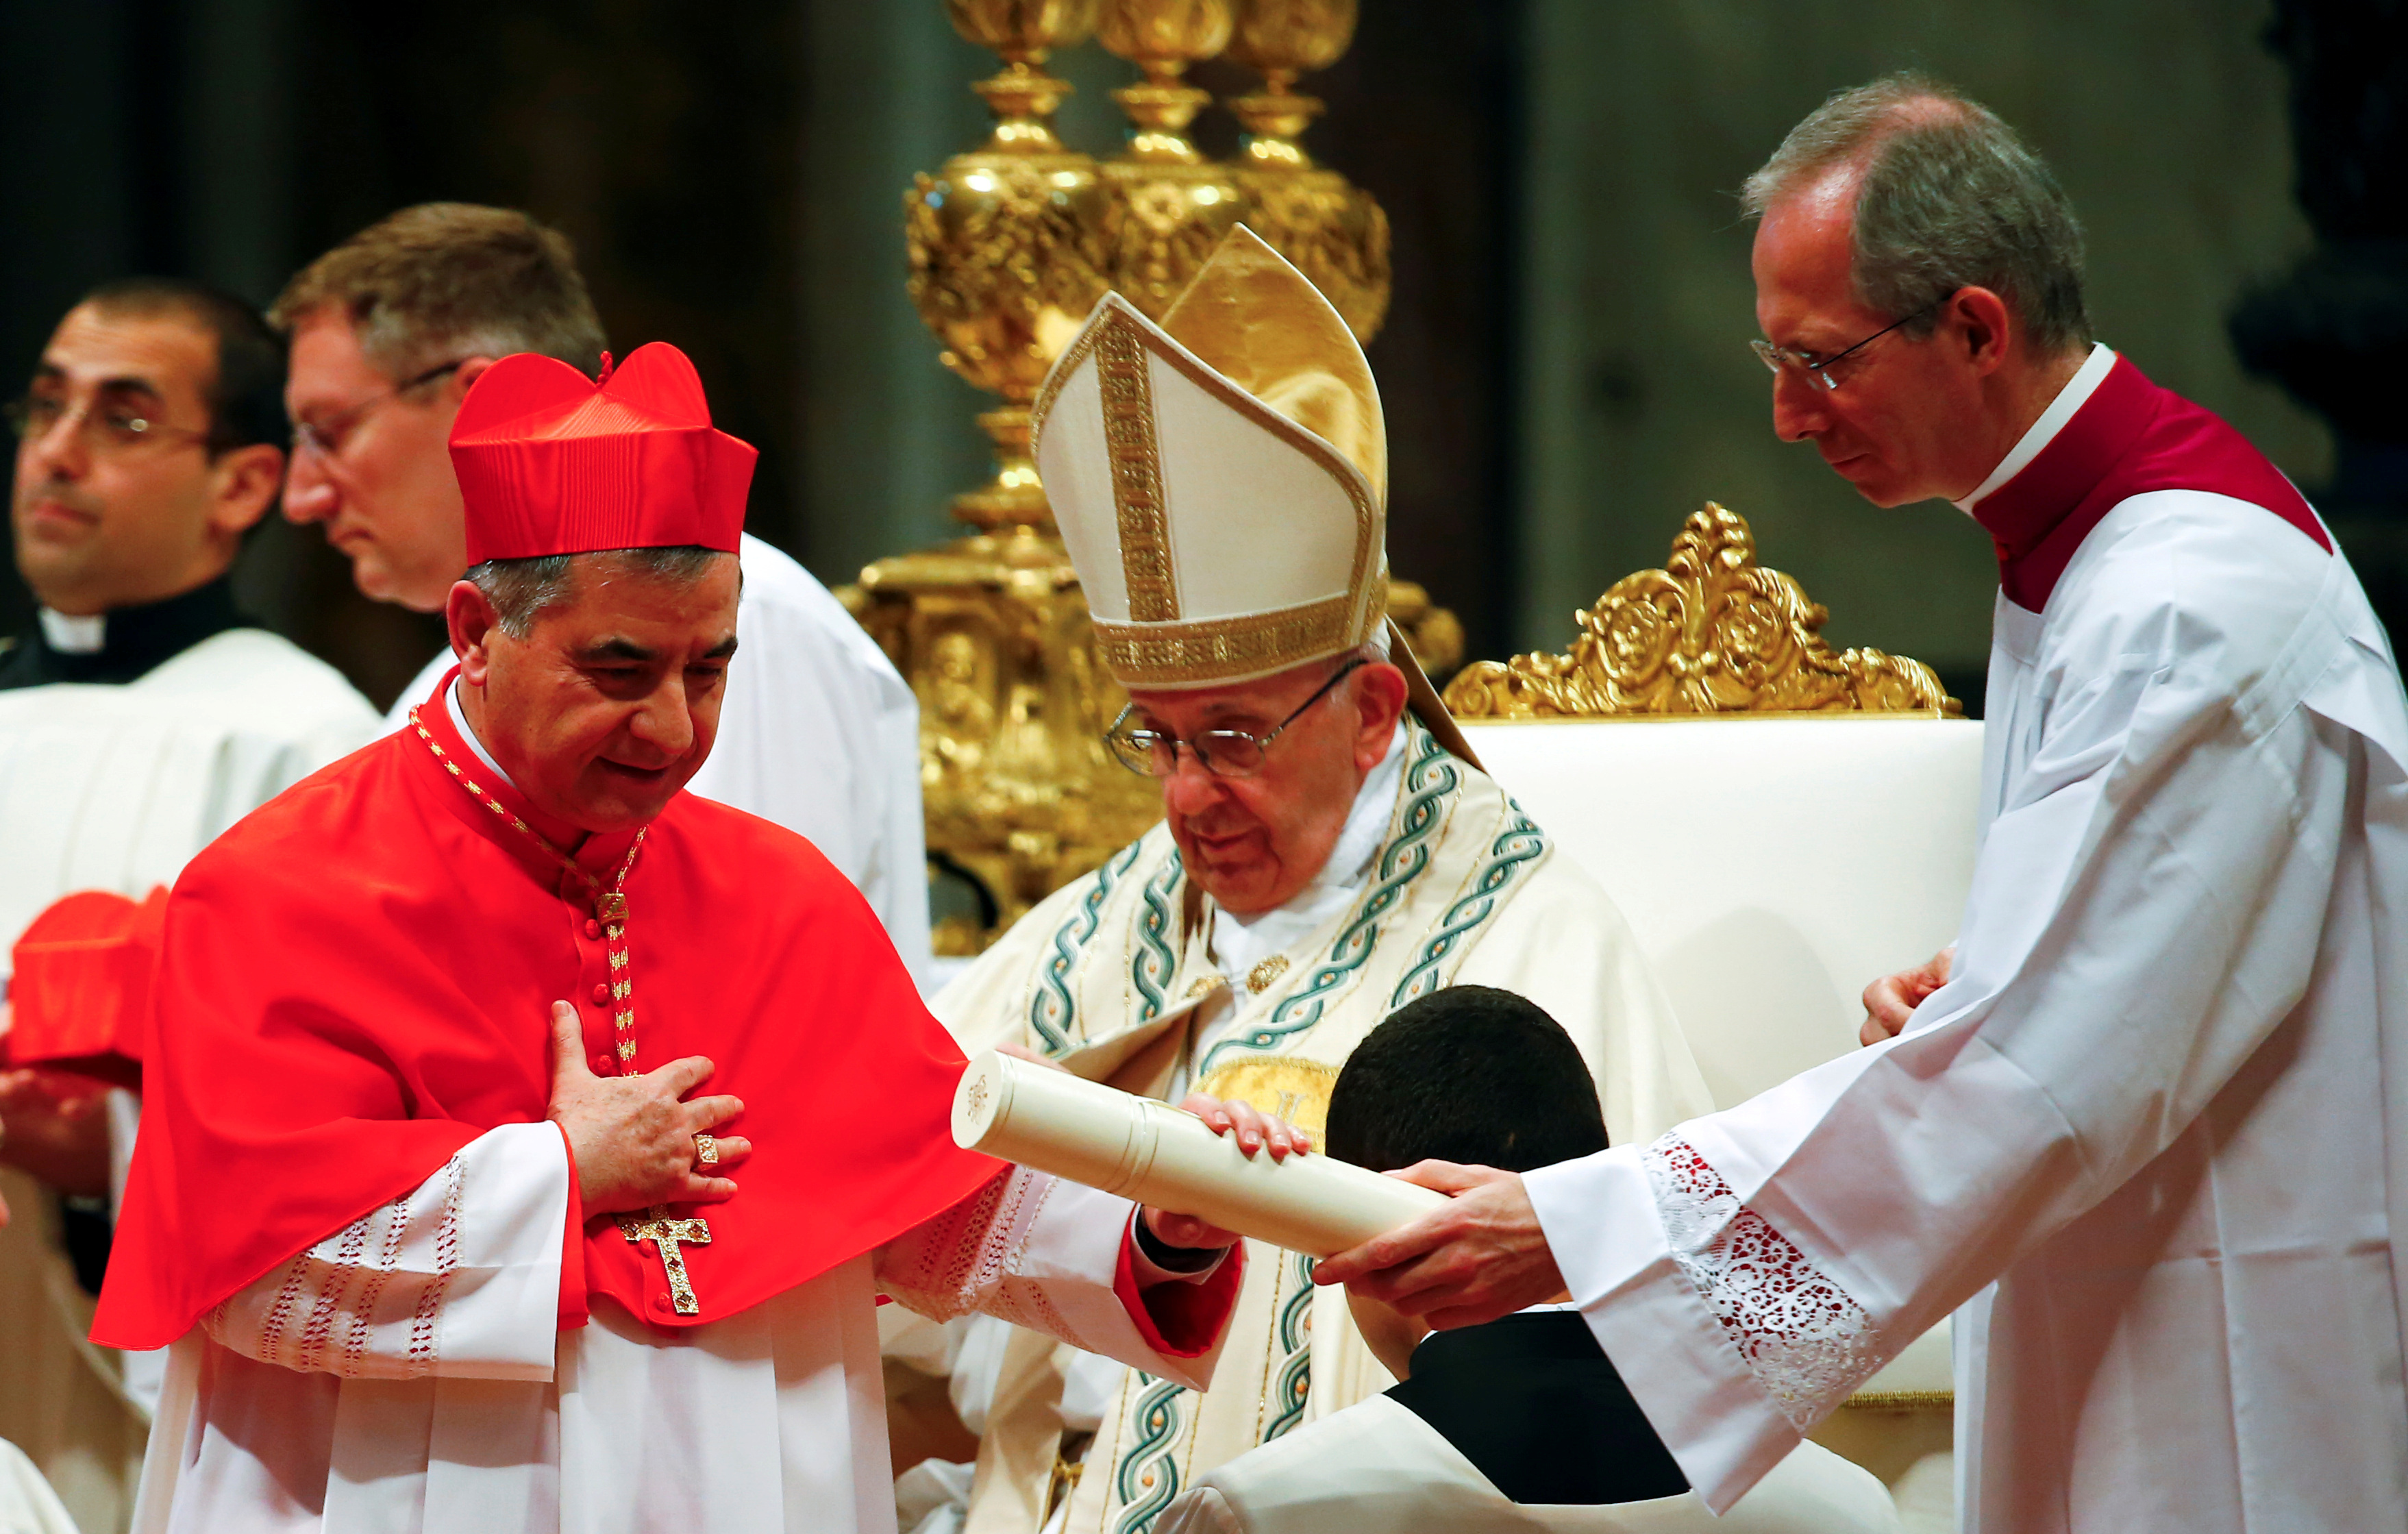 El cardenal reveló un supuesto acuerdo secreto aprobado por el Papa para liberar a una monja colombiana secuestrada en Mali (REUTERS/Tony Gentile)